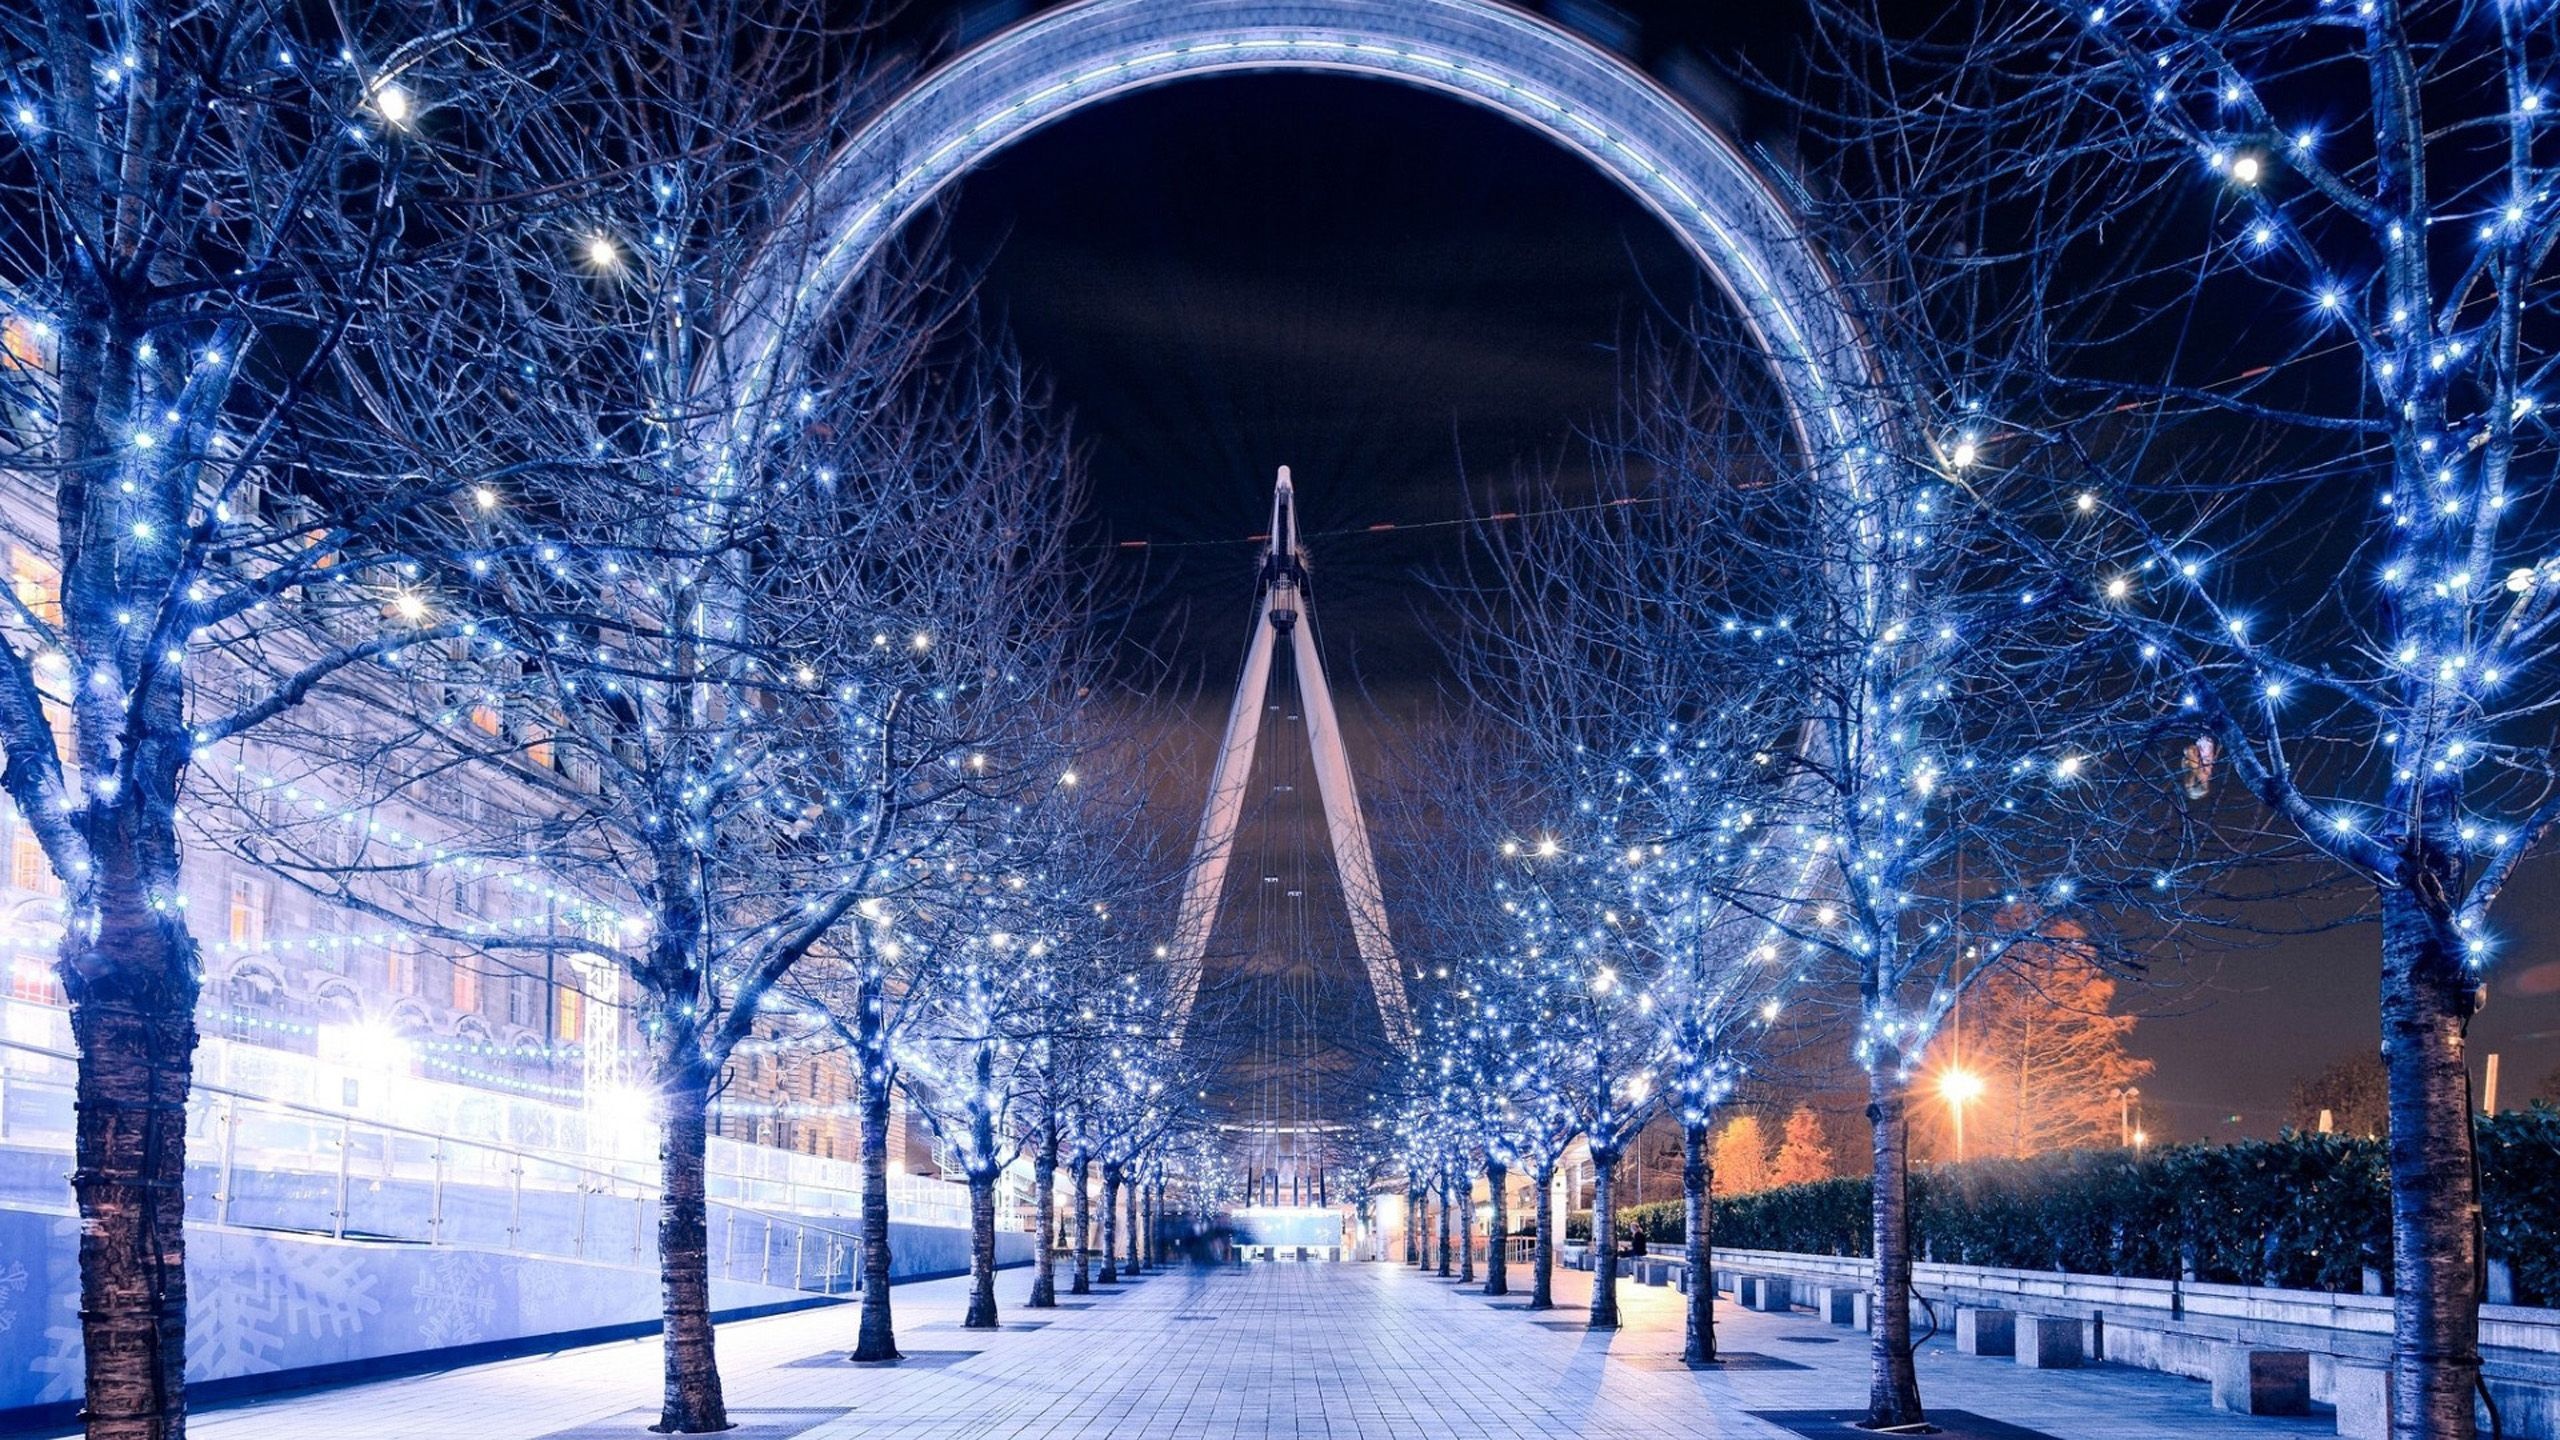 London Eye, Winter wallpaper, Snowy cityscape, Cold weather, 2560x1440 HD Desktop